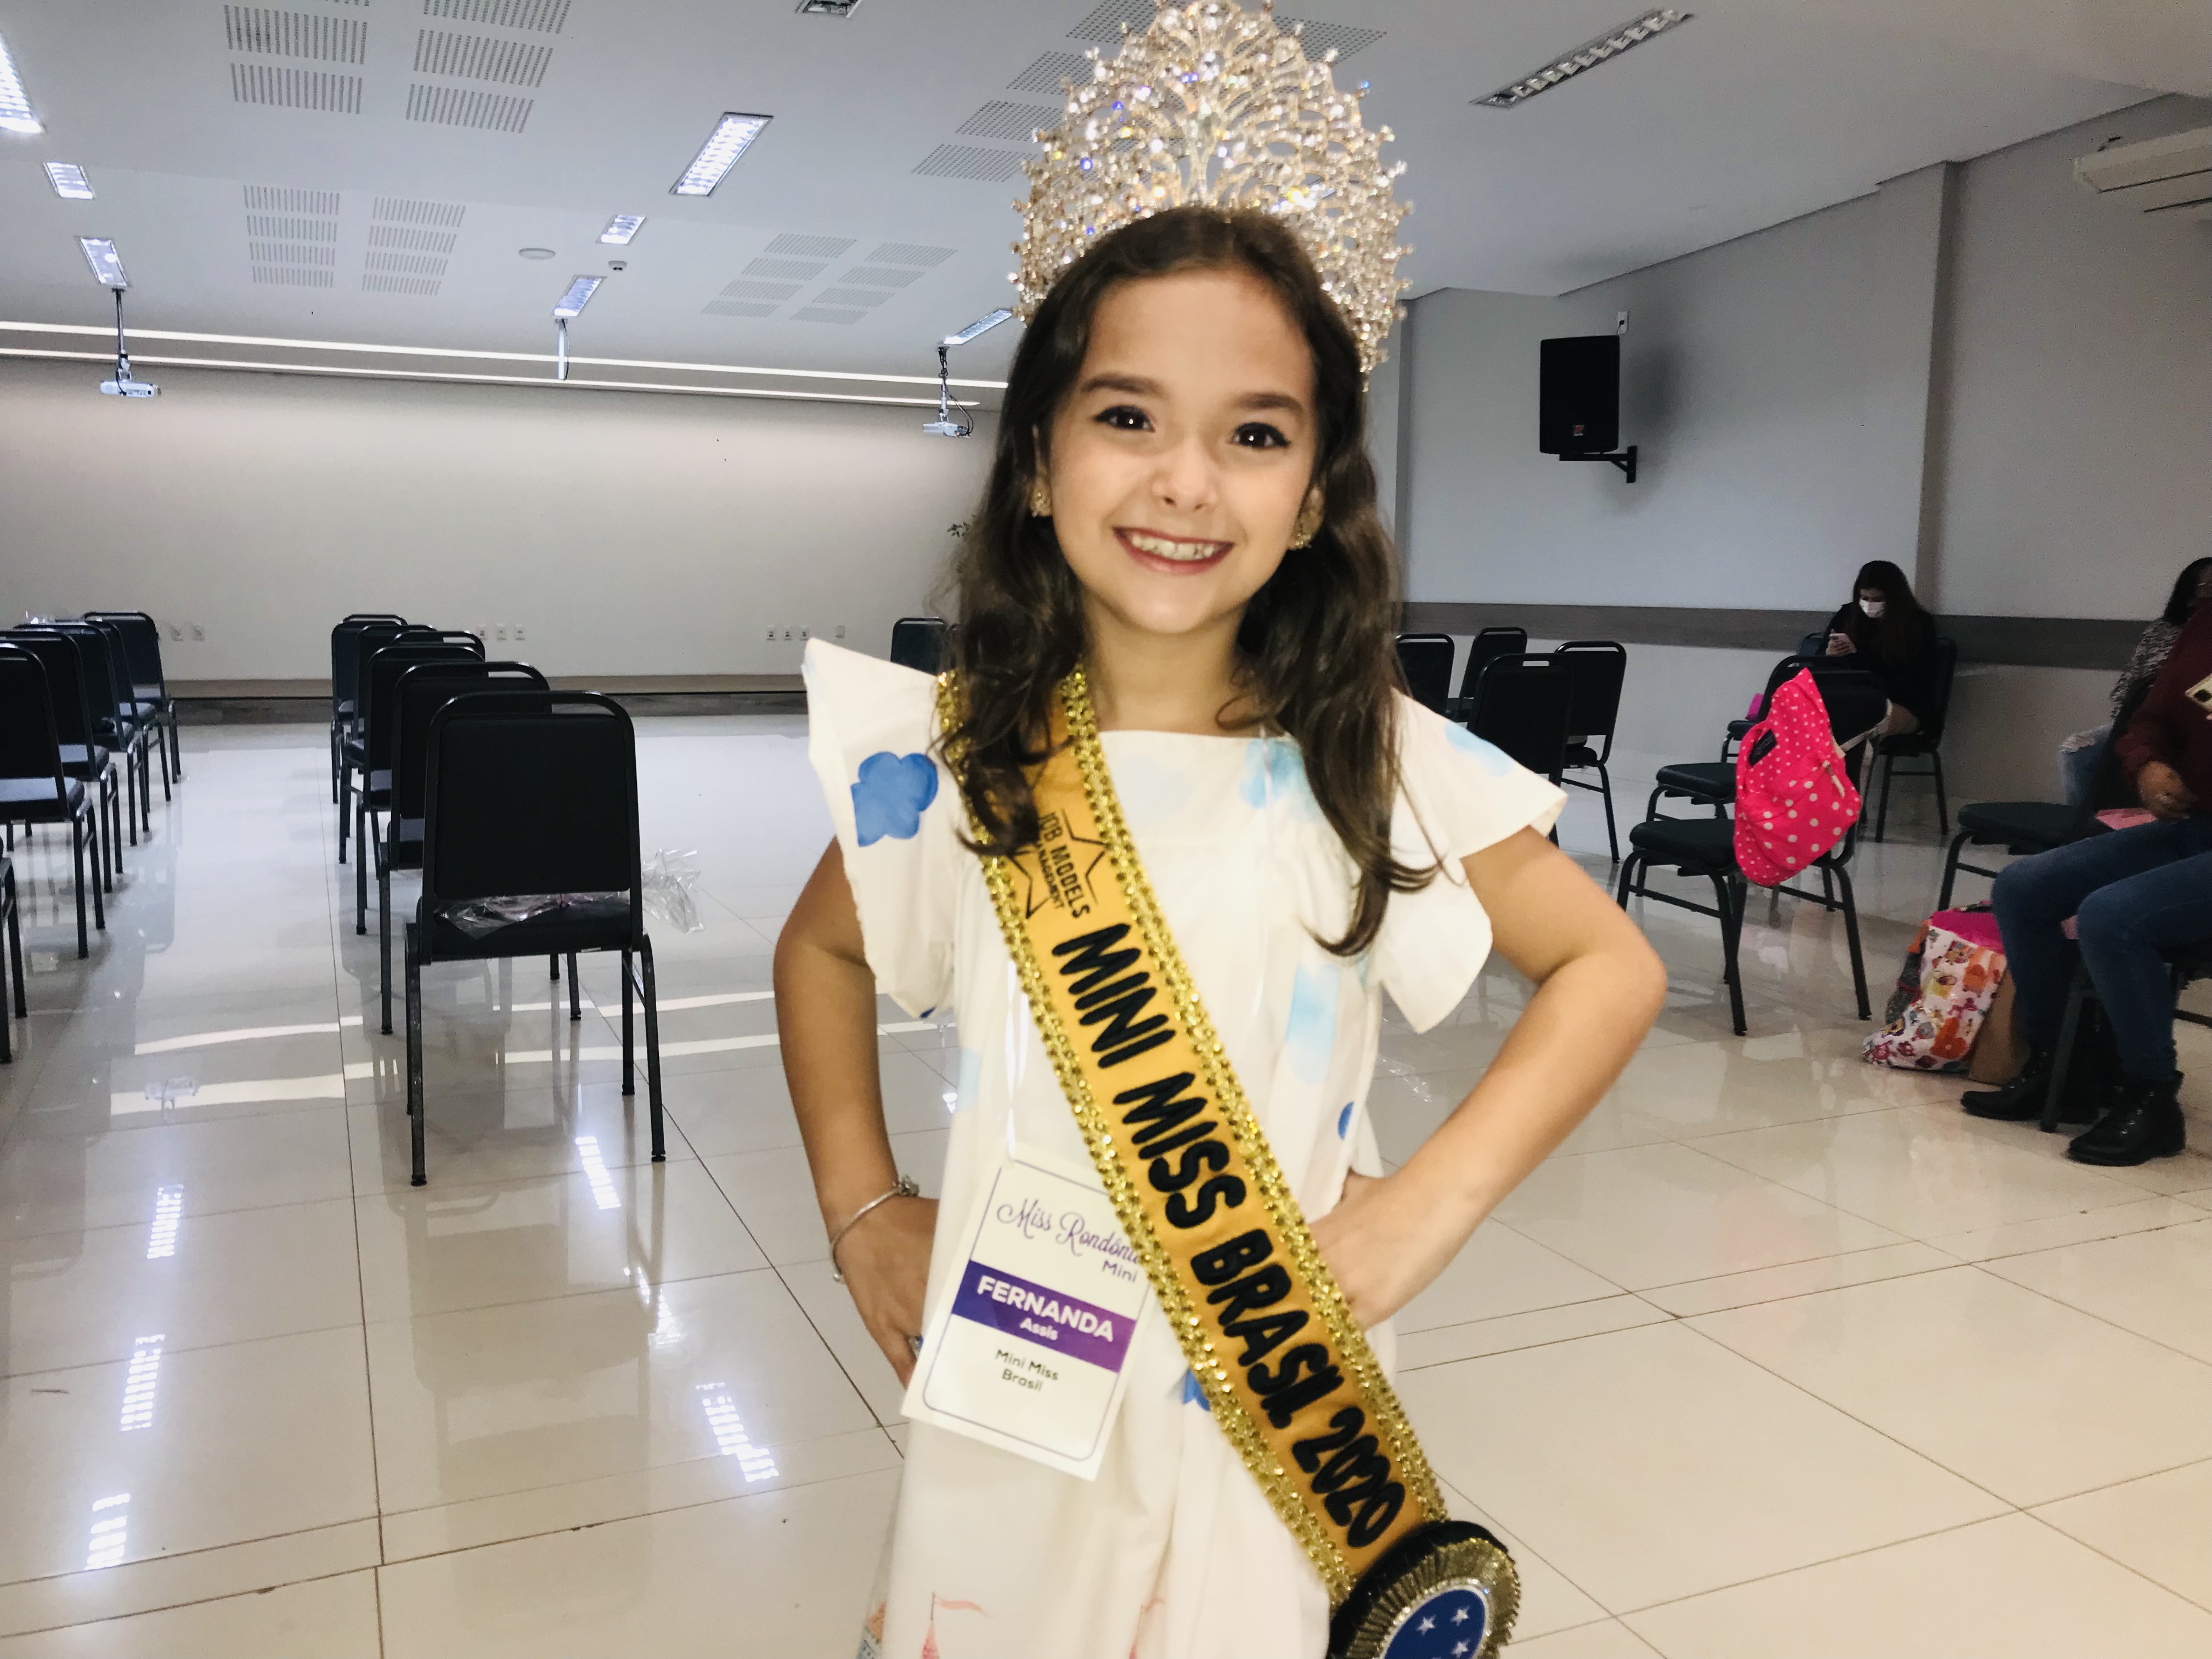 Ensaio do Miss Rondônia 2021